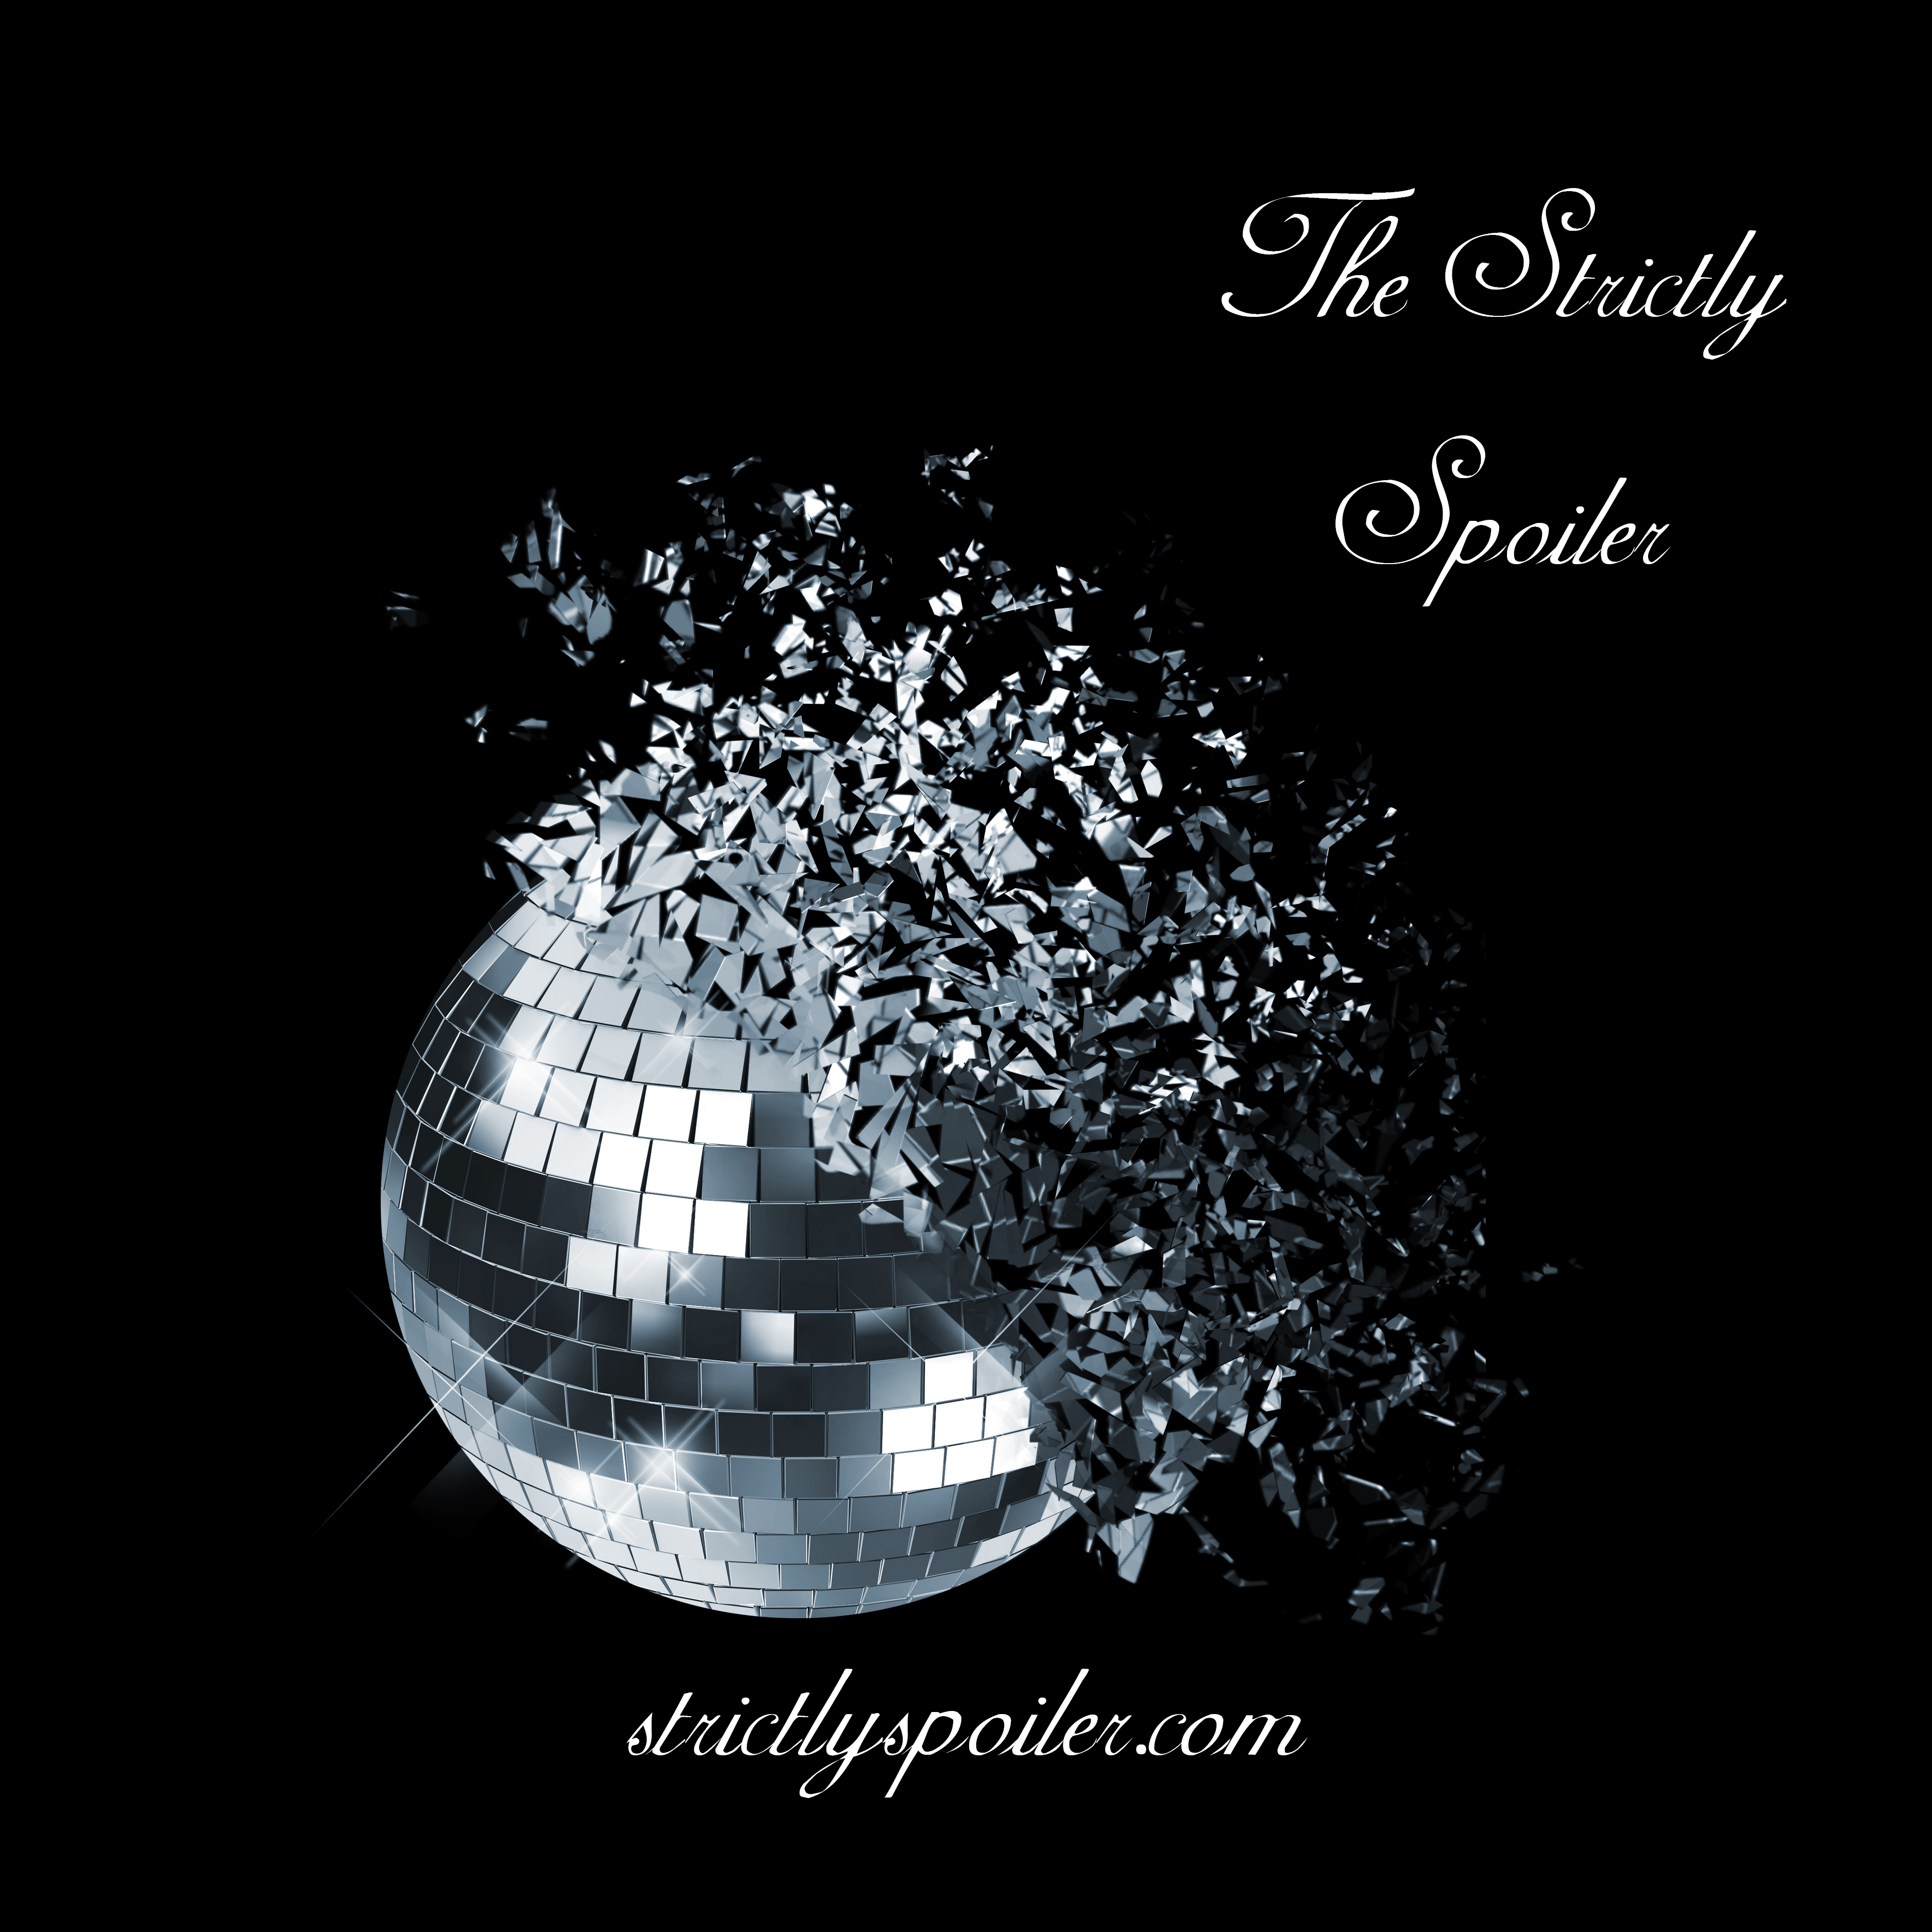 www.strictlyspoiler.com